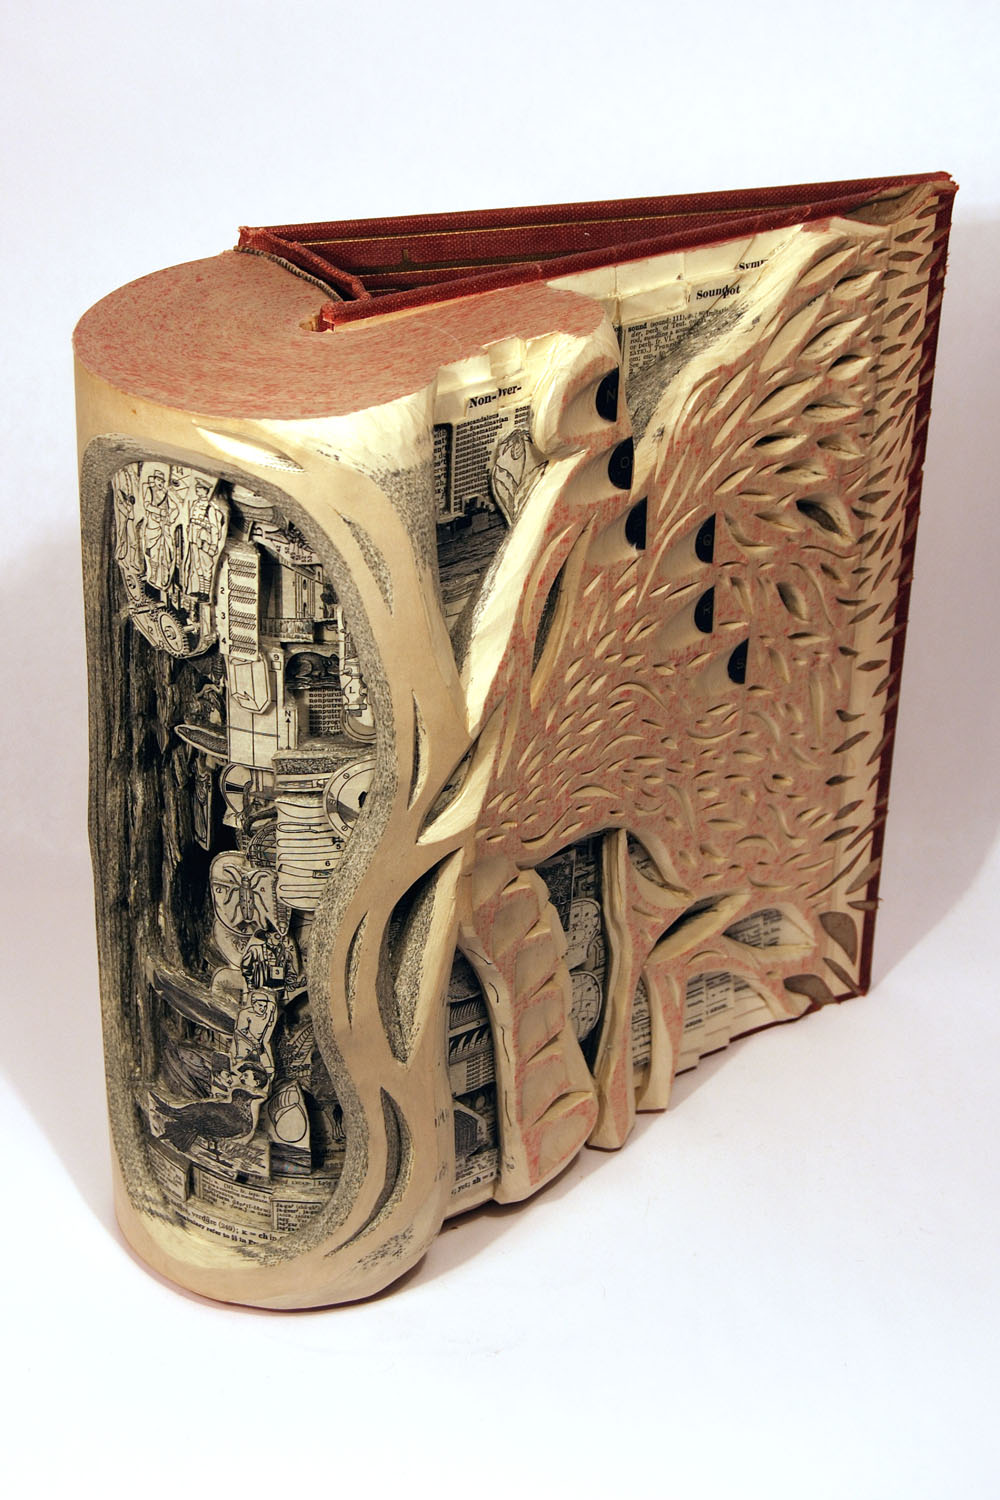 Искусство, которым занимается Брайан, называется book carving.